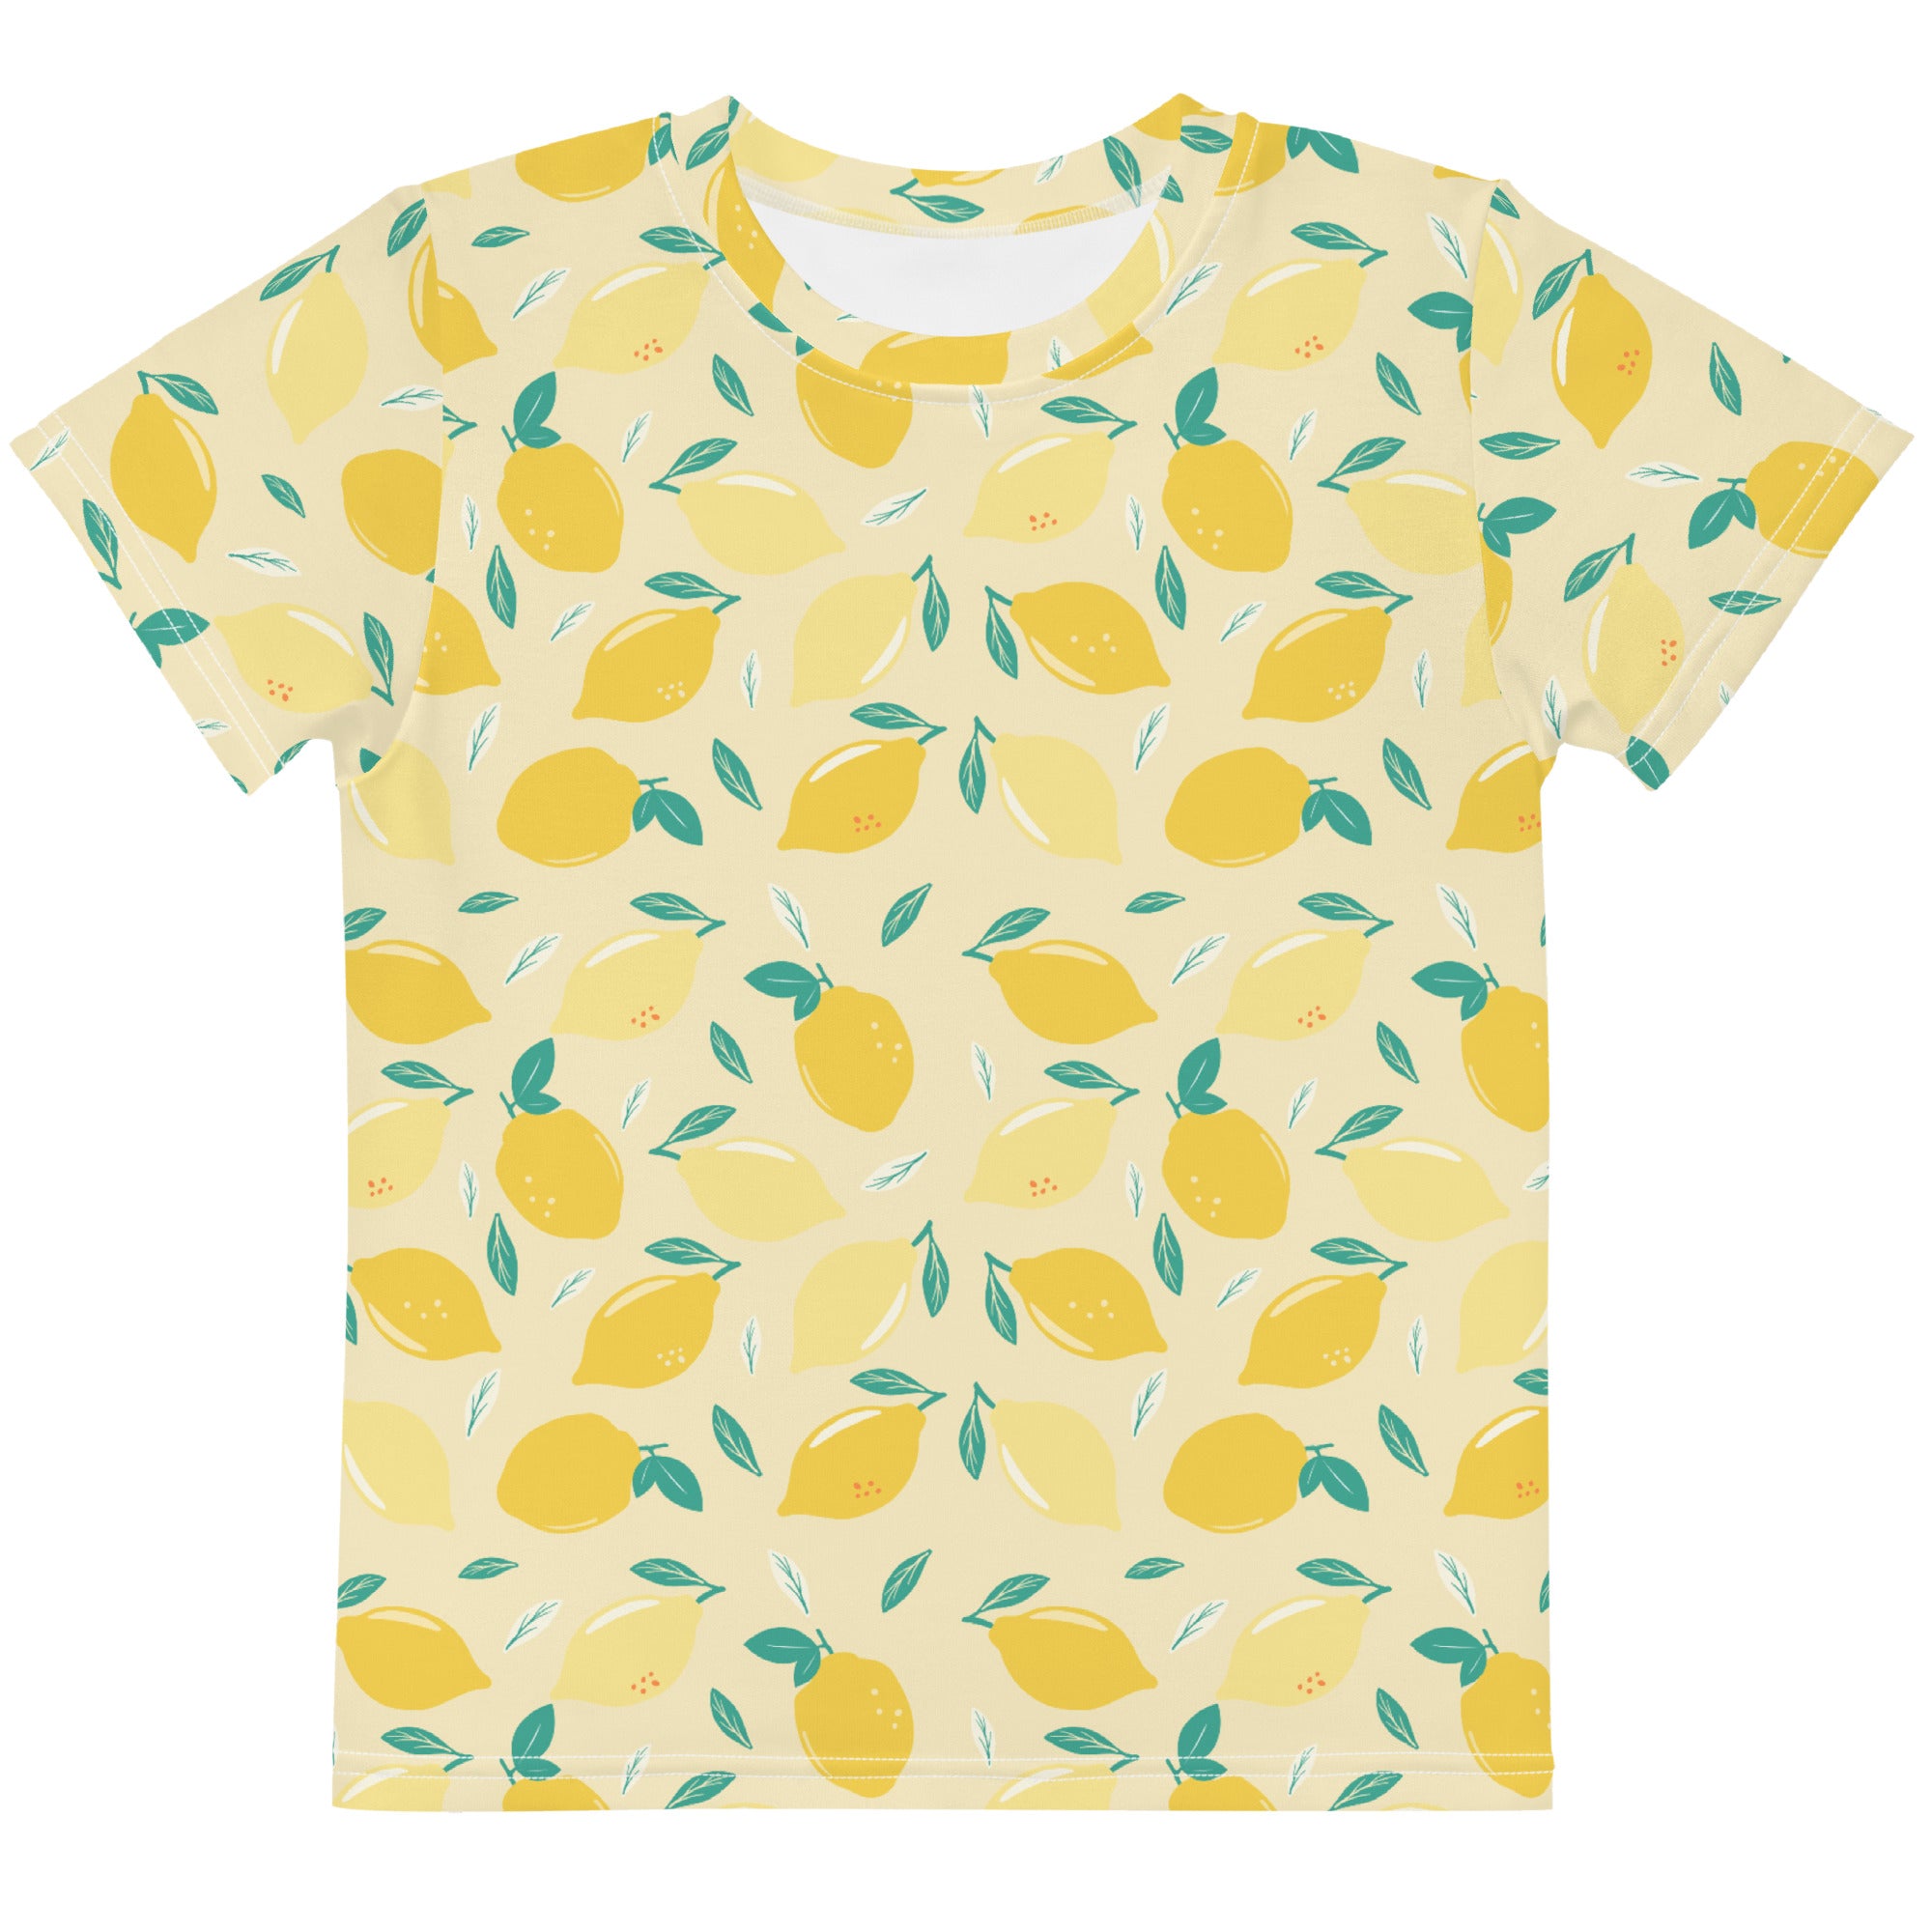 Kids shirt with lemon print